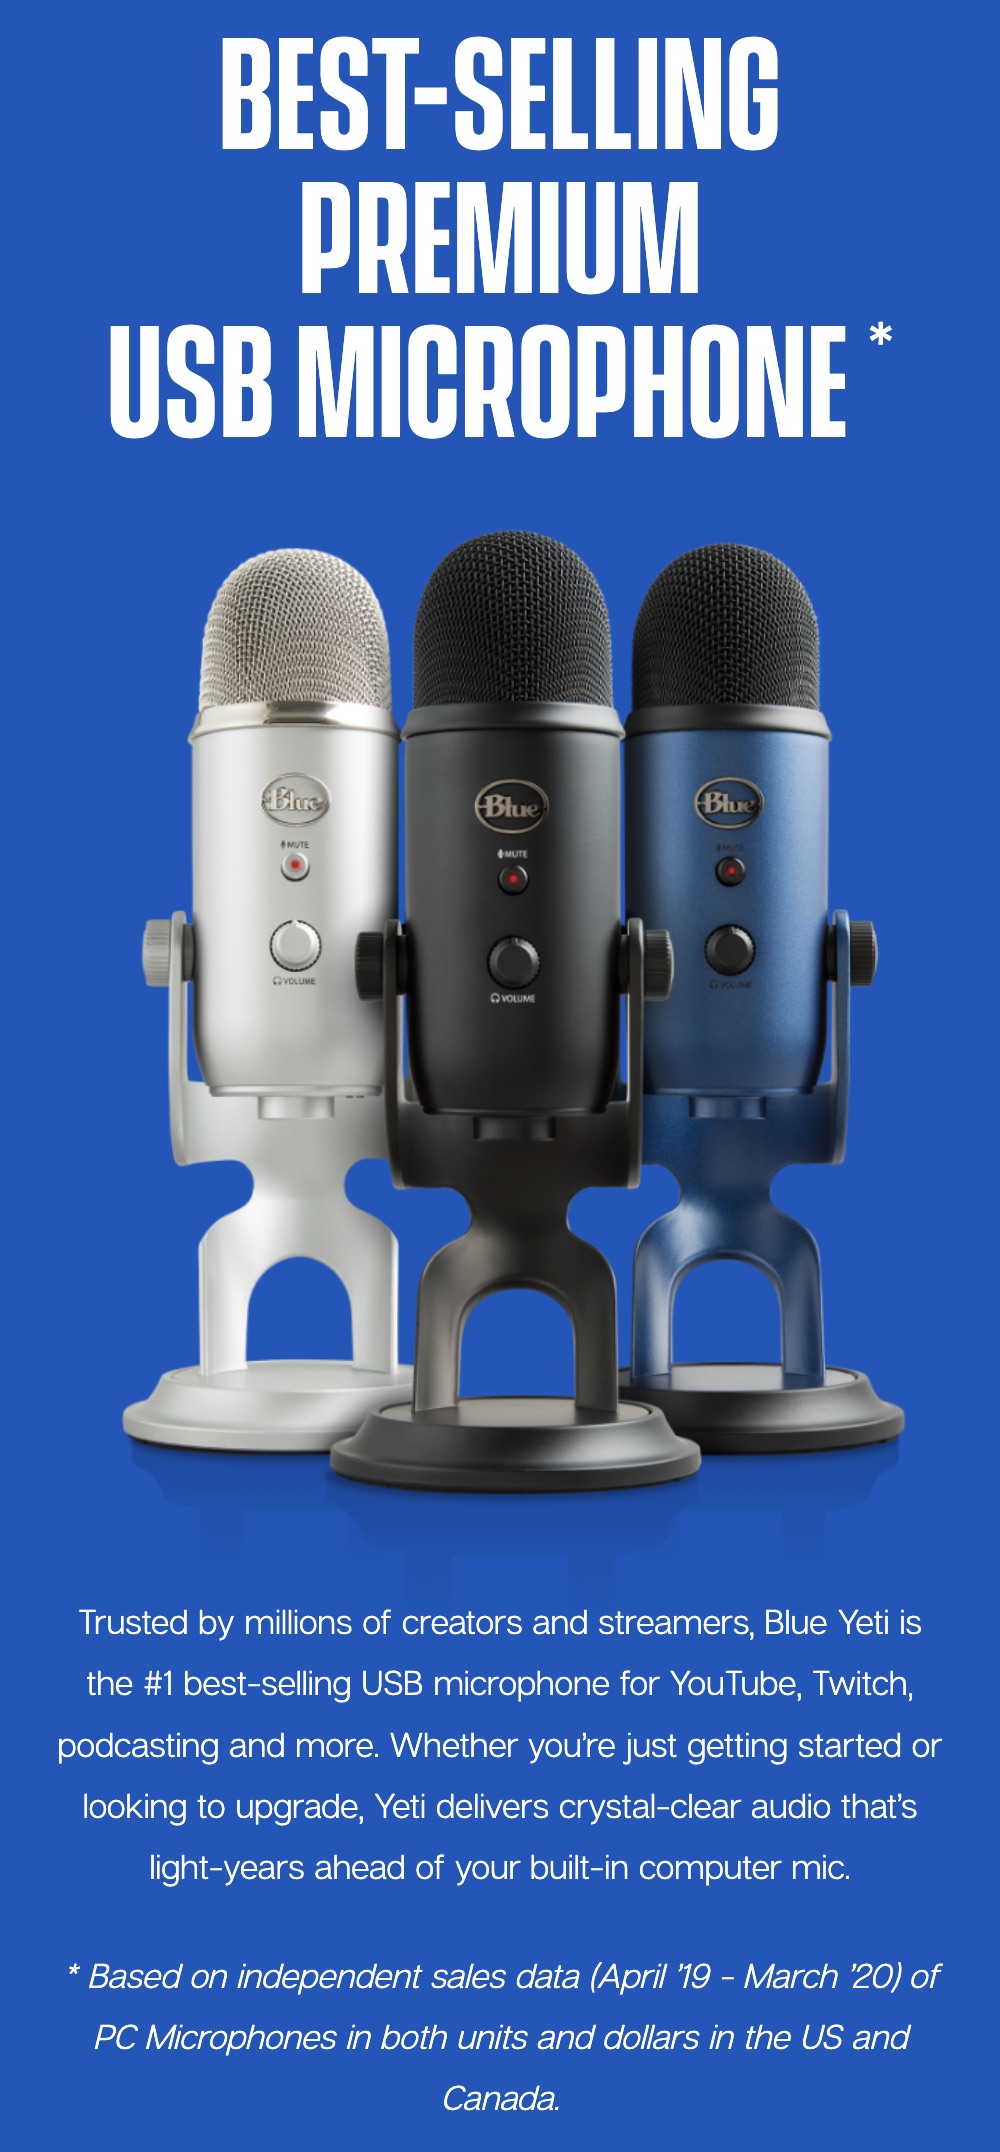 https://laptopsensei.com/wp-content/uploads/2022/02/Blue-Yeti-Premium-Multi-Pattern-USB-Microphone-with-Blue-Voce-Description-3.jpeg